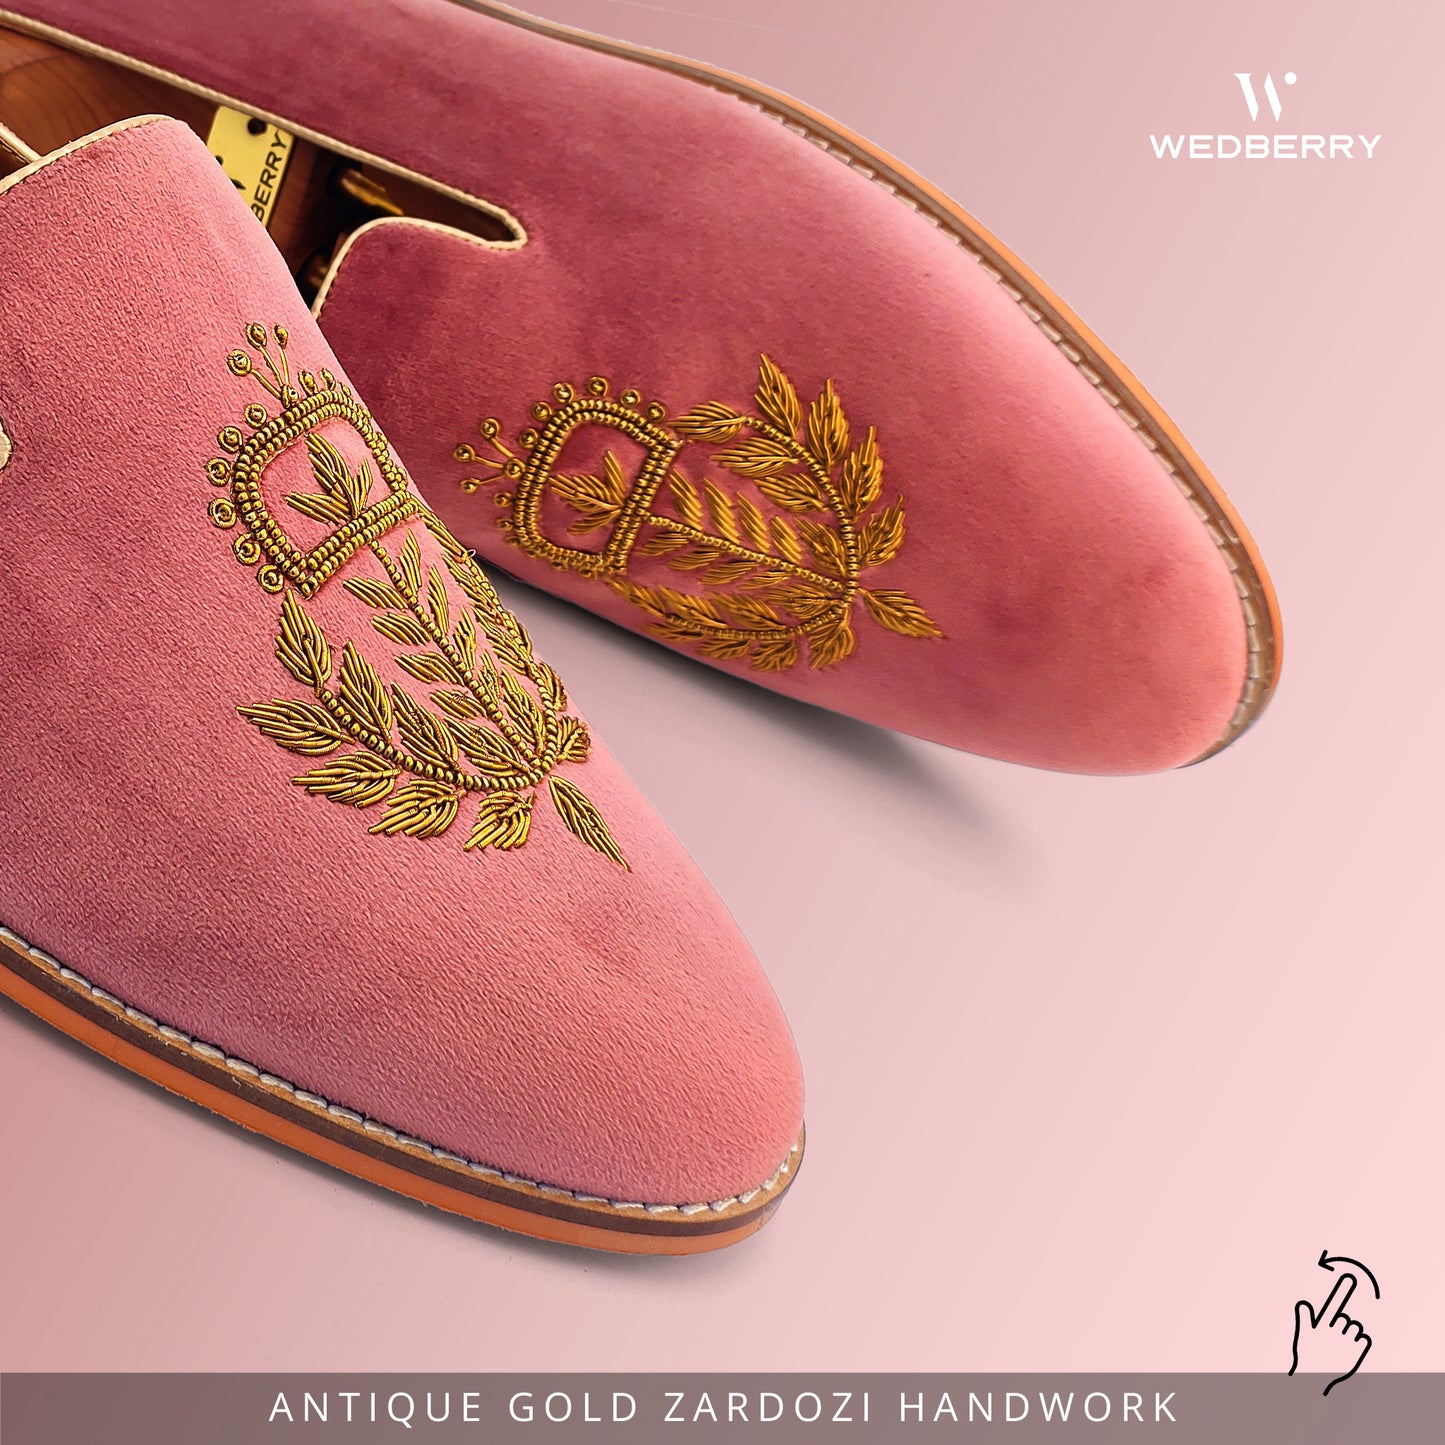 Fusia Velvet with Antique Gold Zardozi Handwork for Men